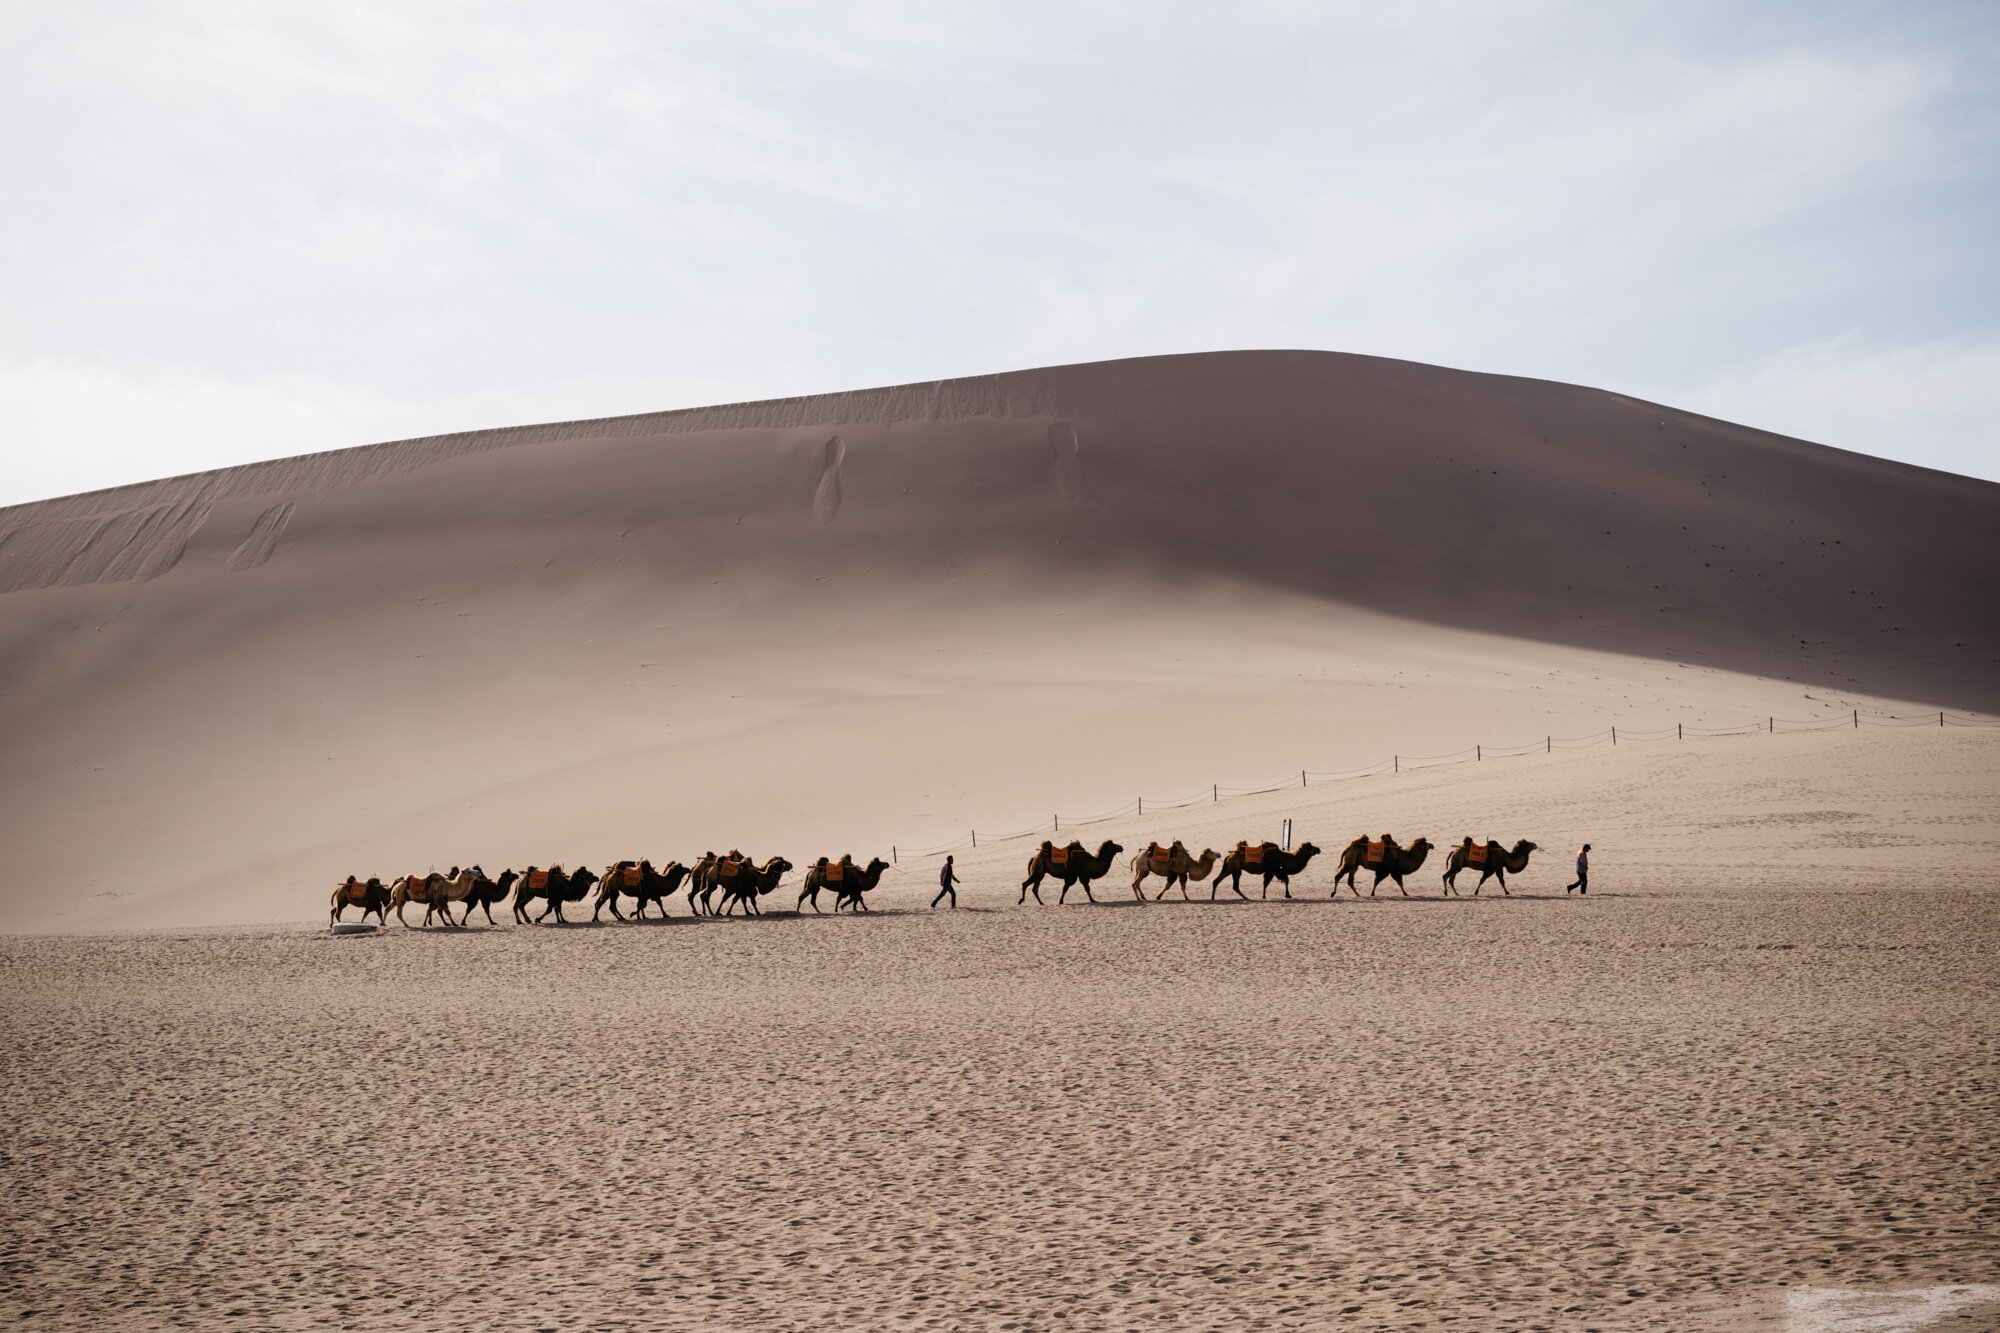  Bactrian camel moving through the Gobi desert in China 